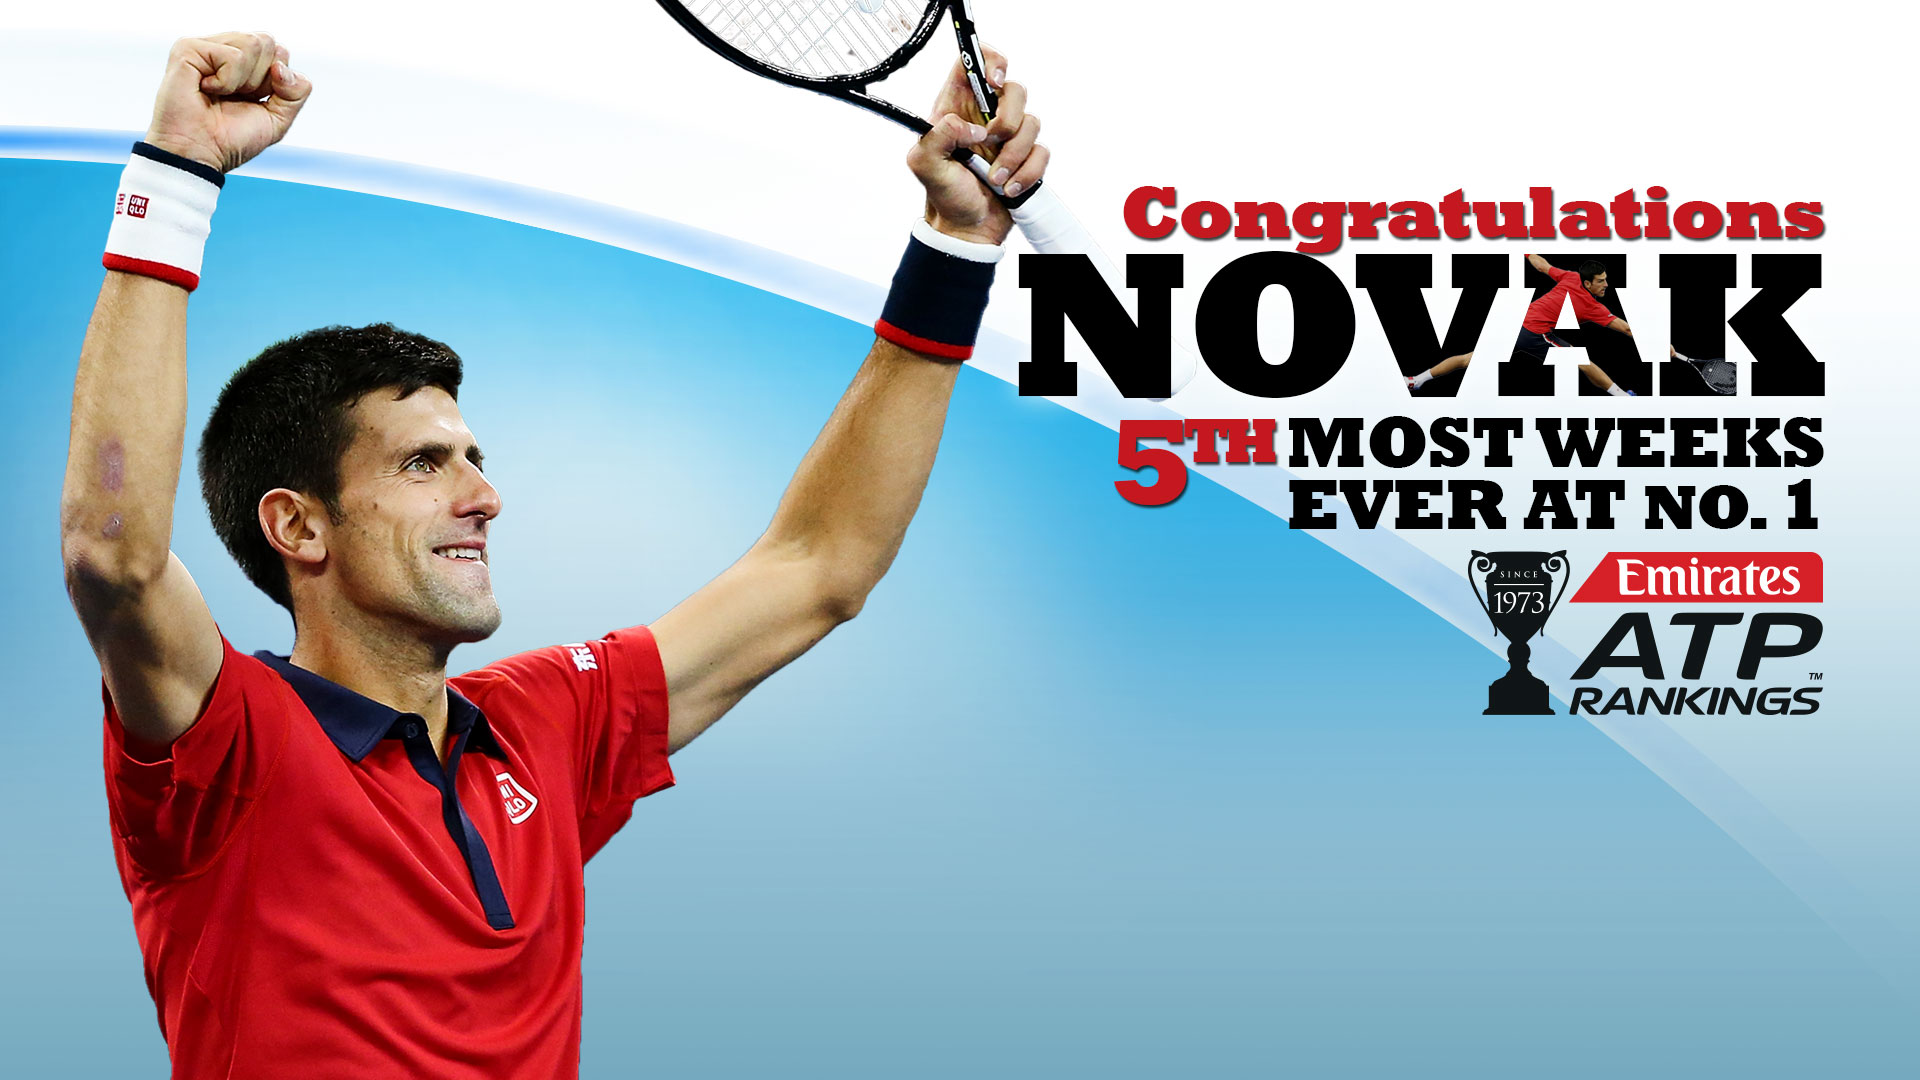 Djokovic Celebrates 171st Week At No. 1 In Emirates ATP Rankings